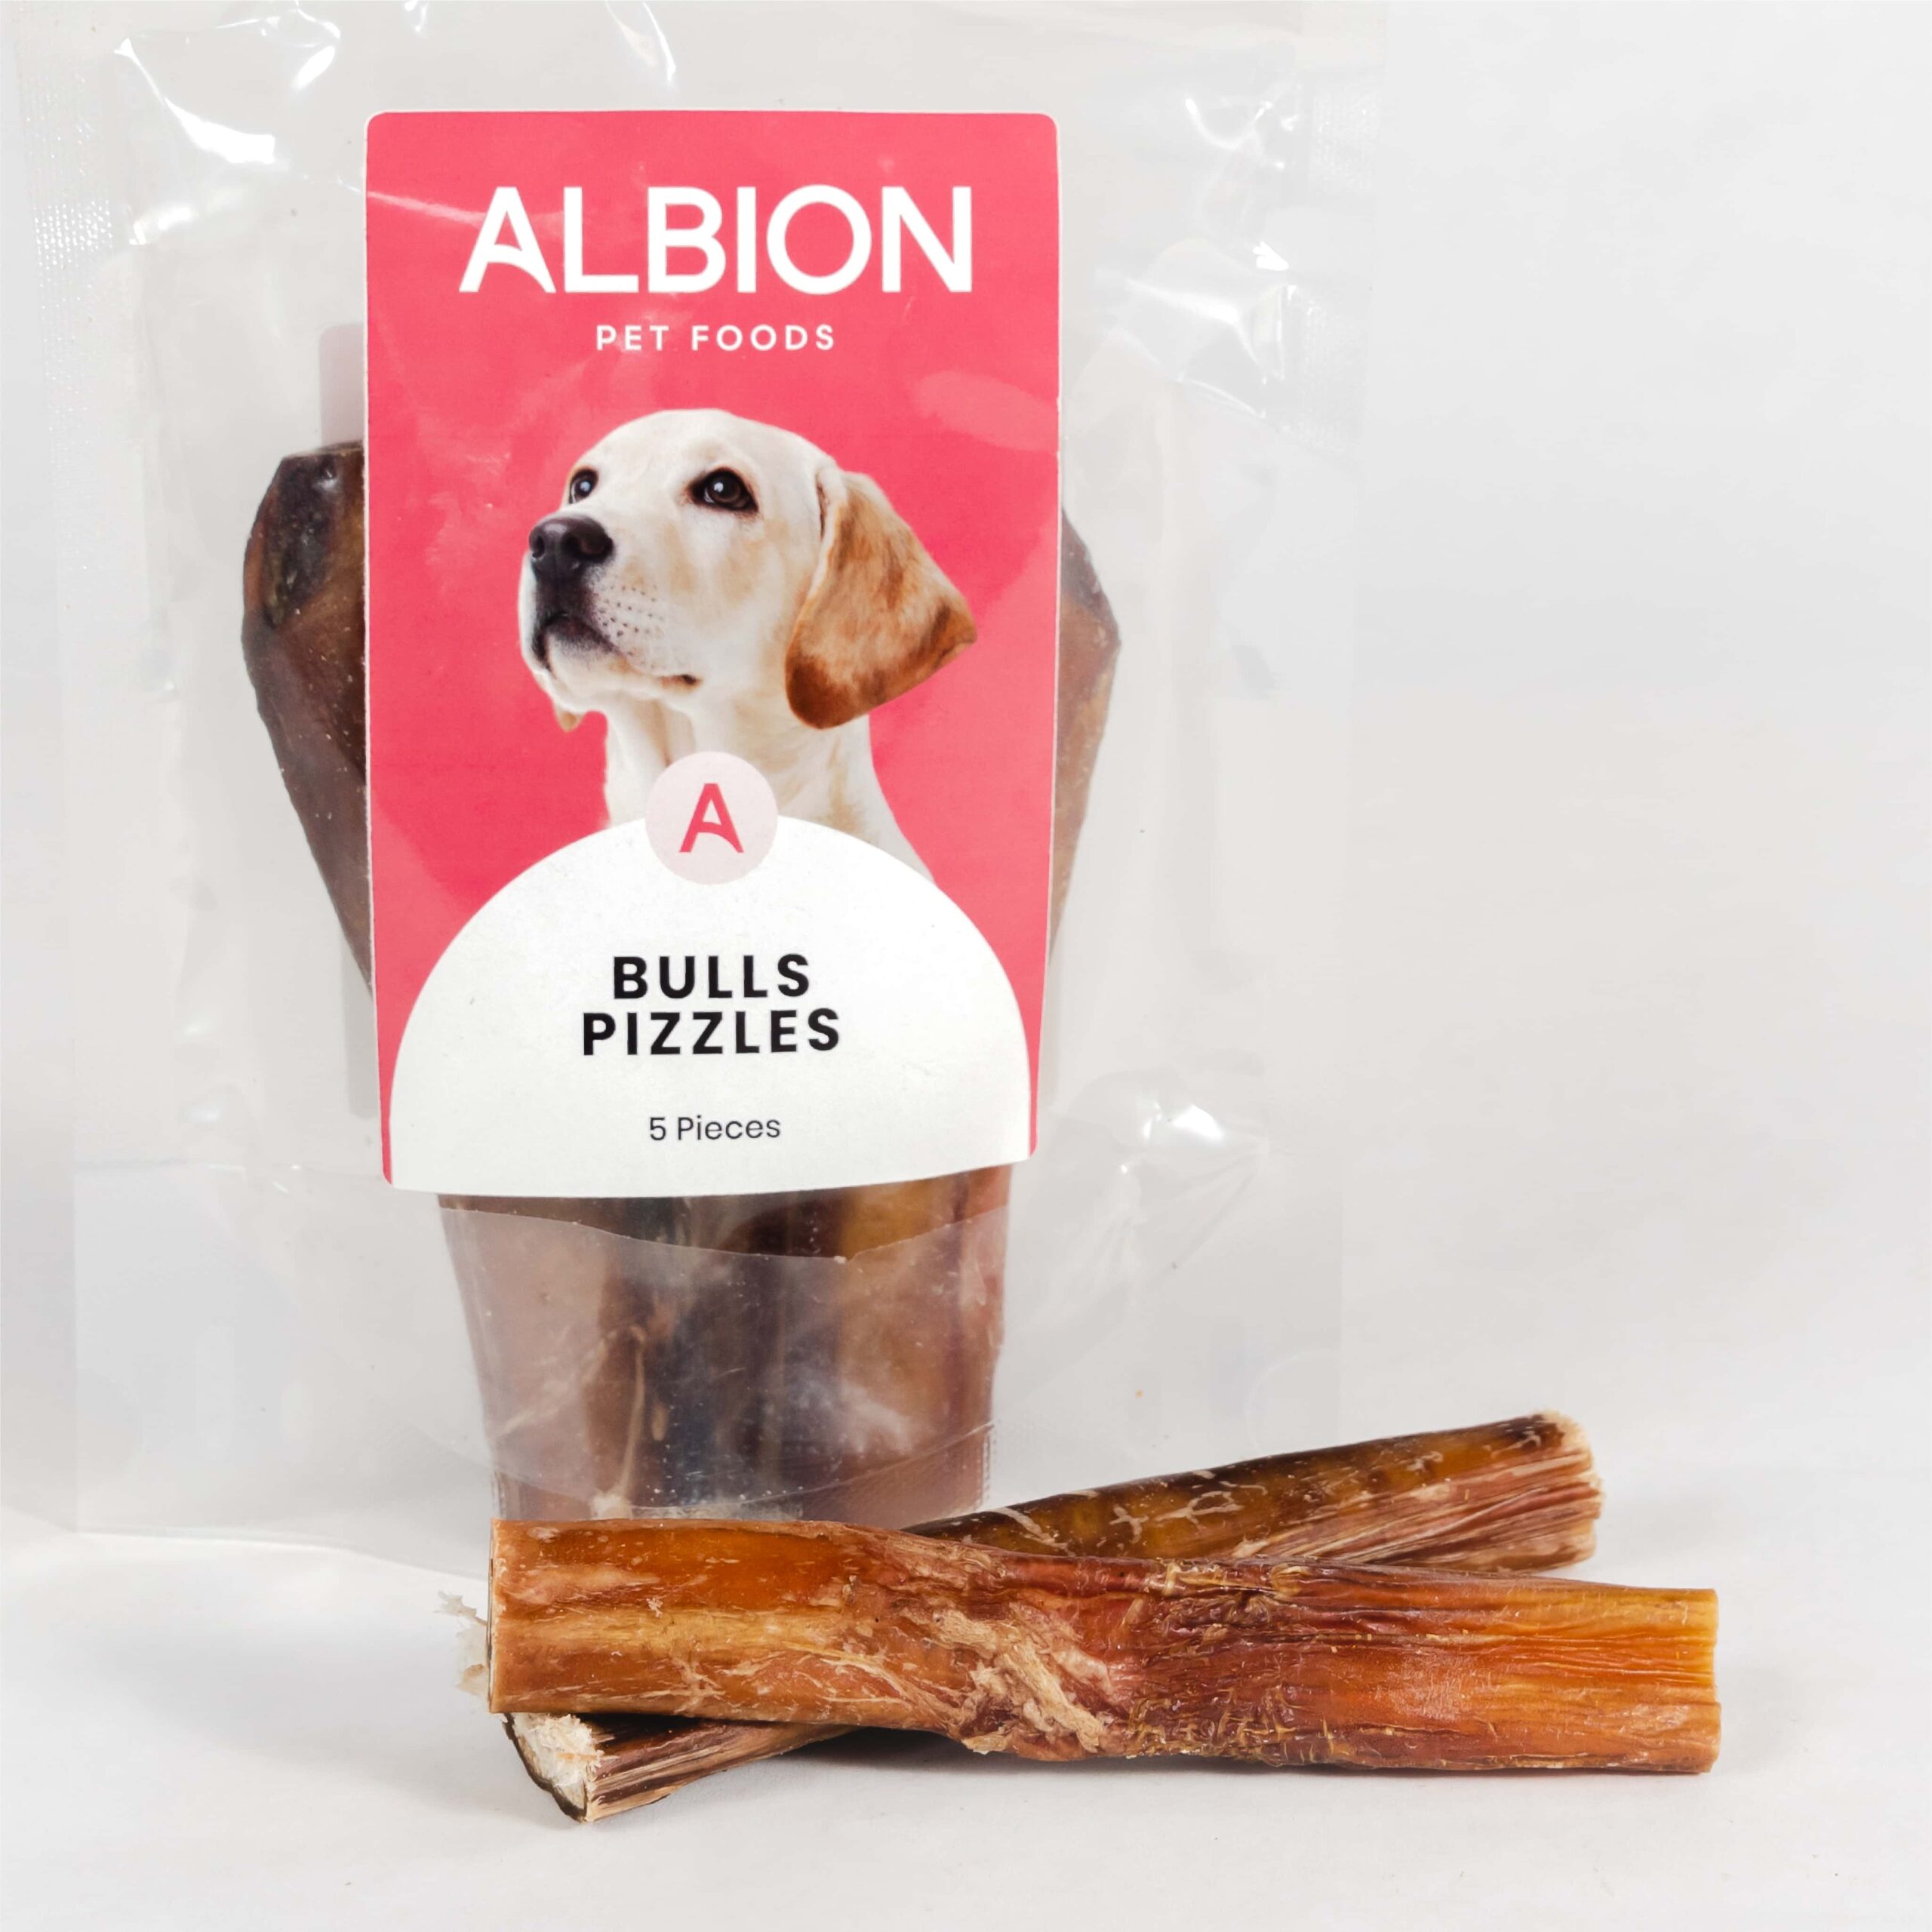 Albion Pet Foods Bulls Pizzles 5 Pieces